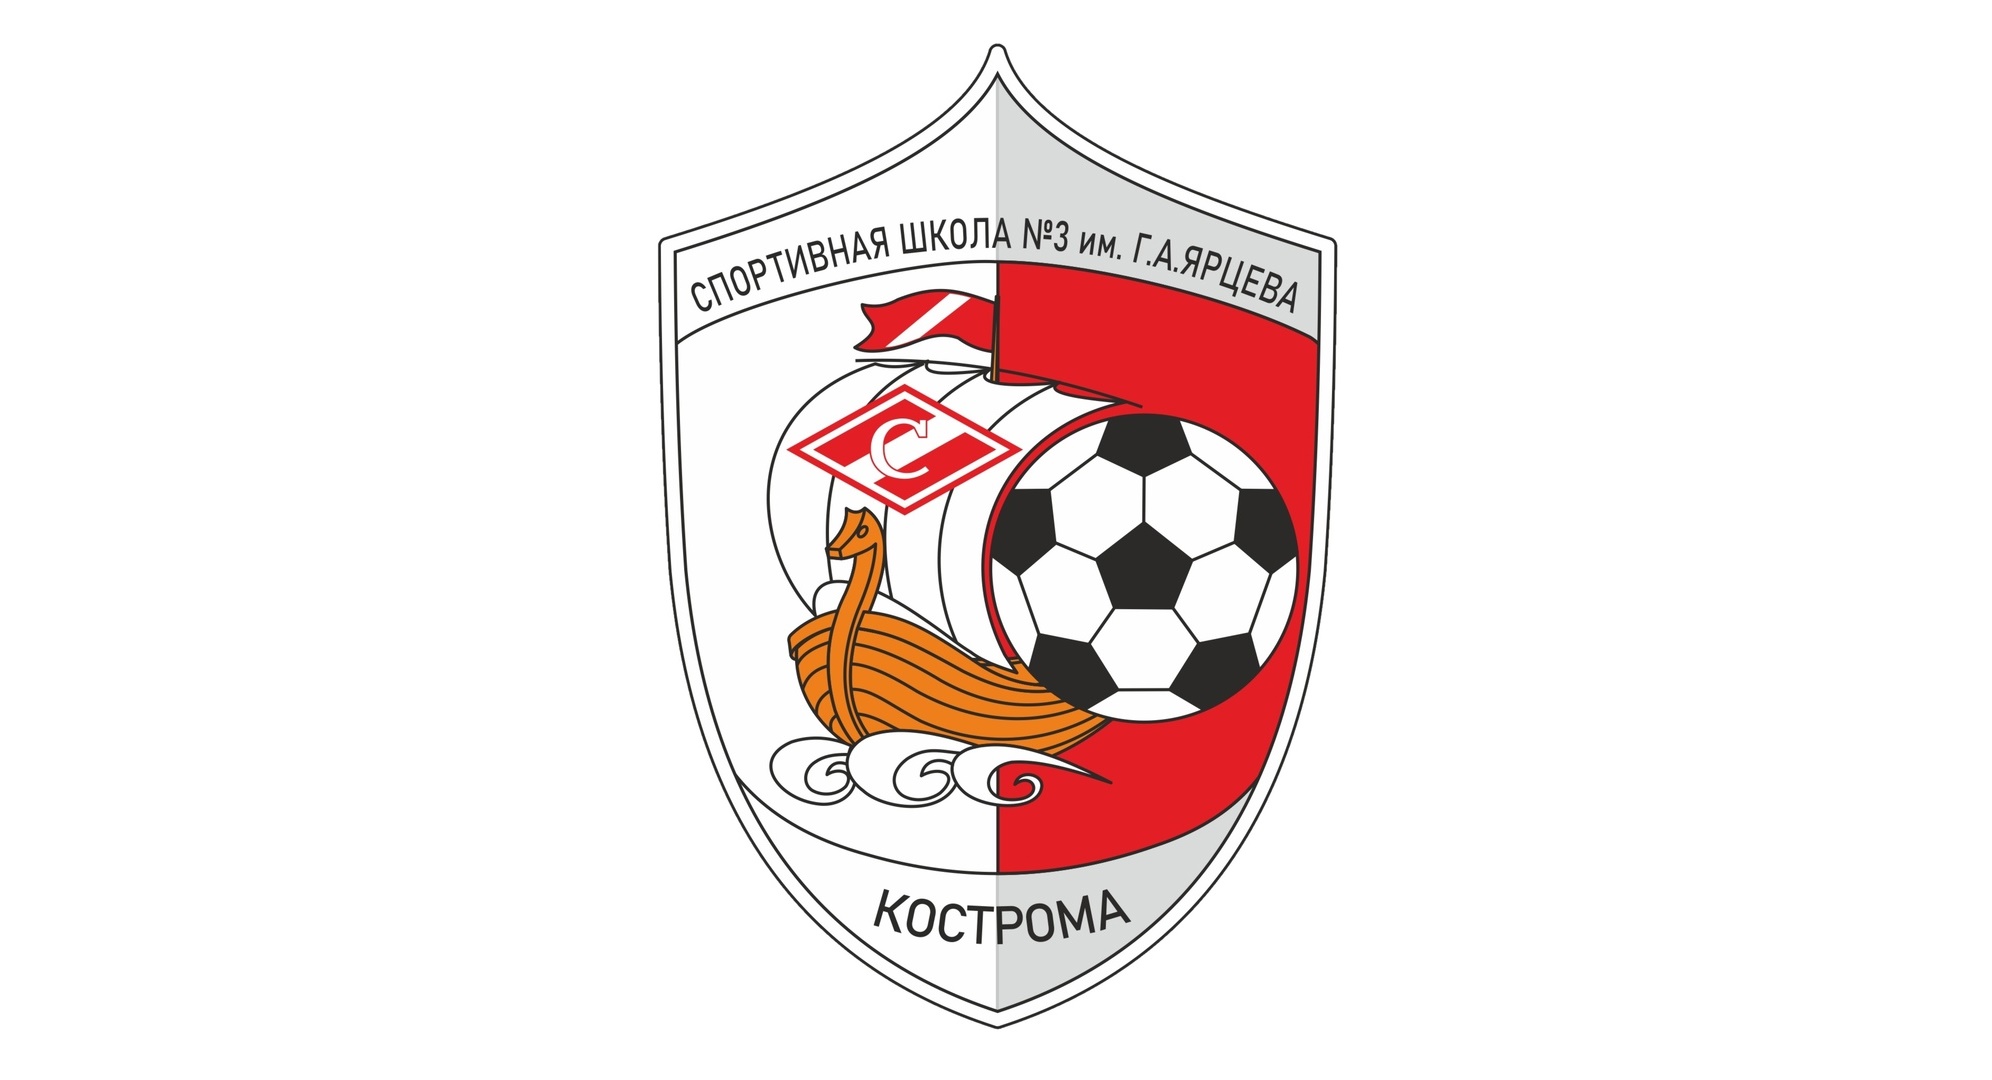 Костромские футболисты-ярцевцы выдали сверхрезультативную ничью в Третьем дивизионе